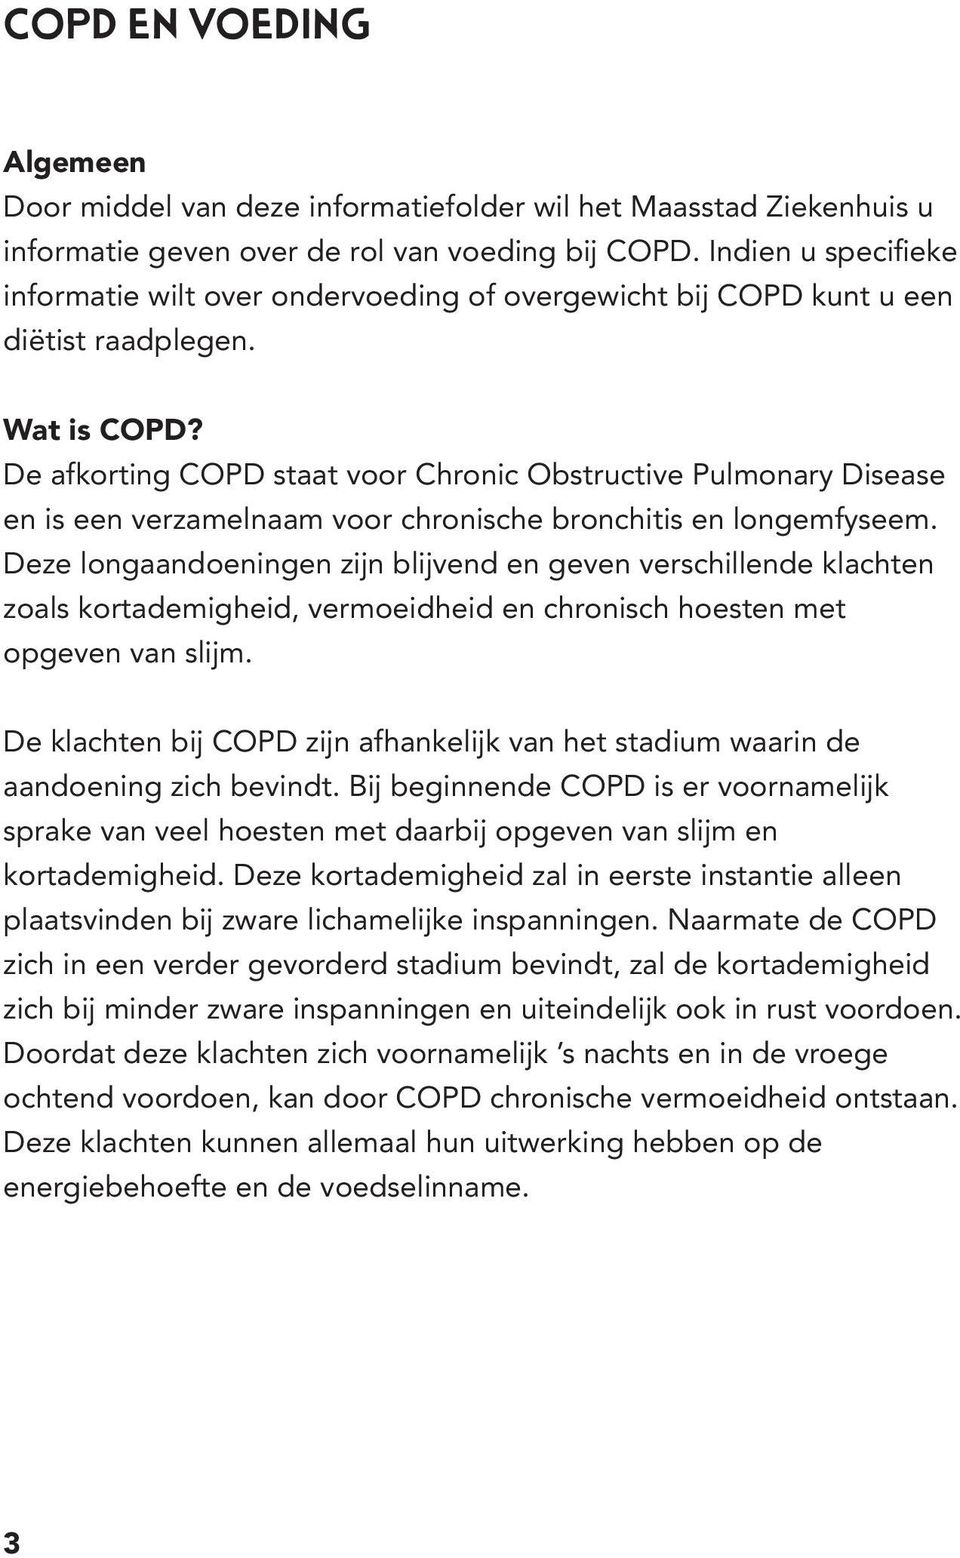 De afkorting COPD staat voor Chronic Obstructive Pulmonary Disease en is een verzamelnaam voor chronische bronchitis en longemfyseem.